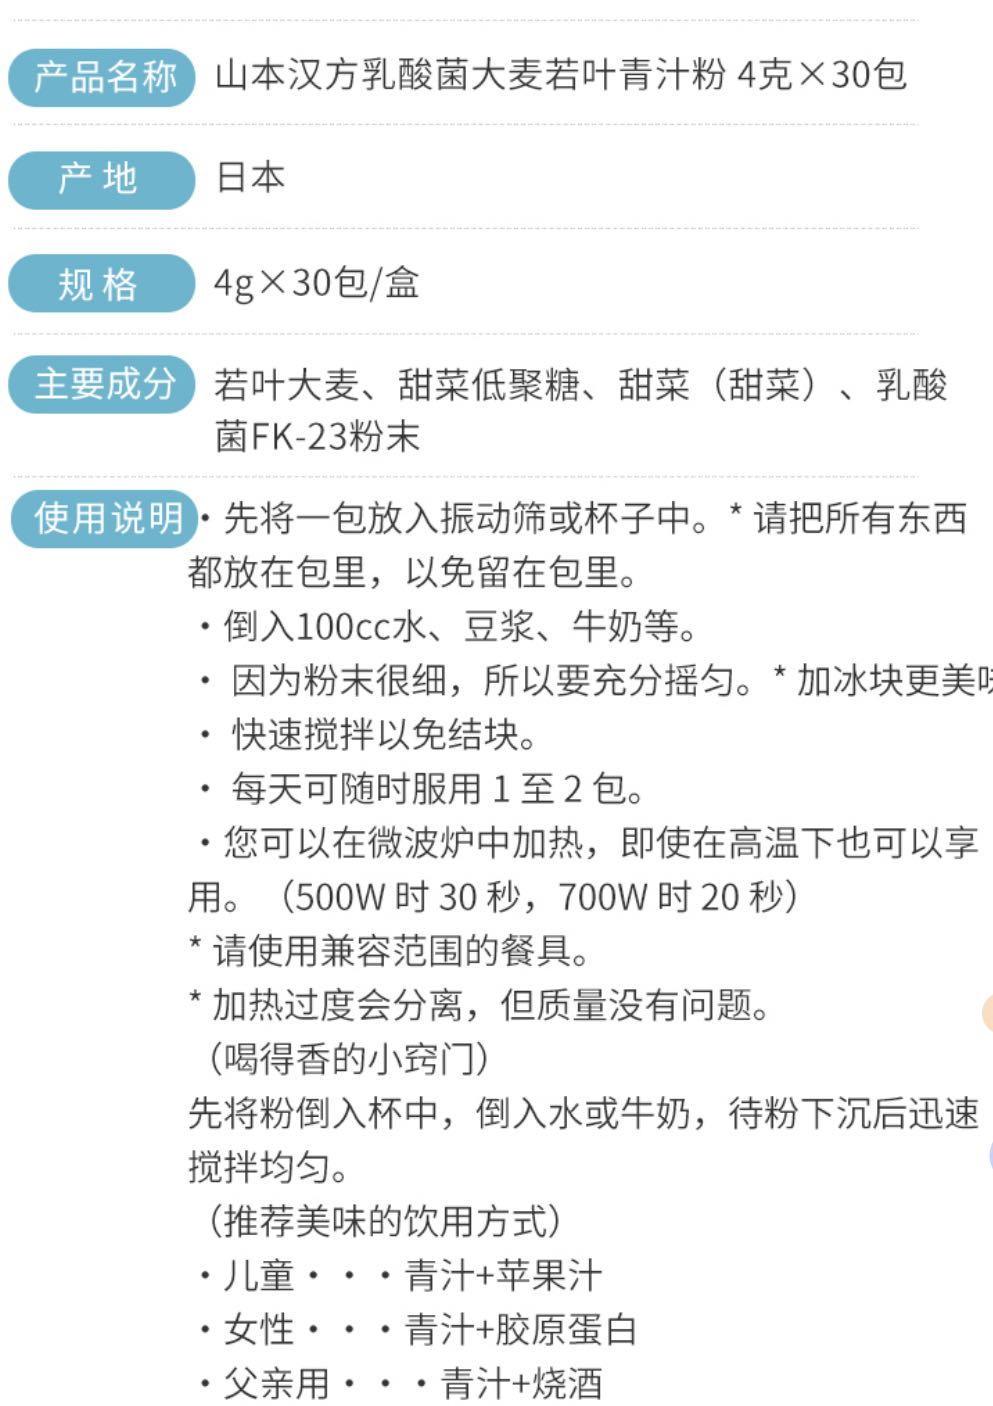 WeChat Image_20210730121807.jpg